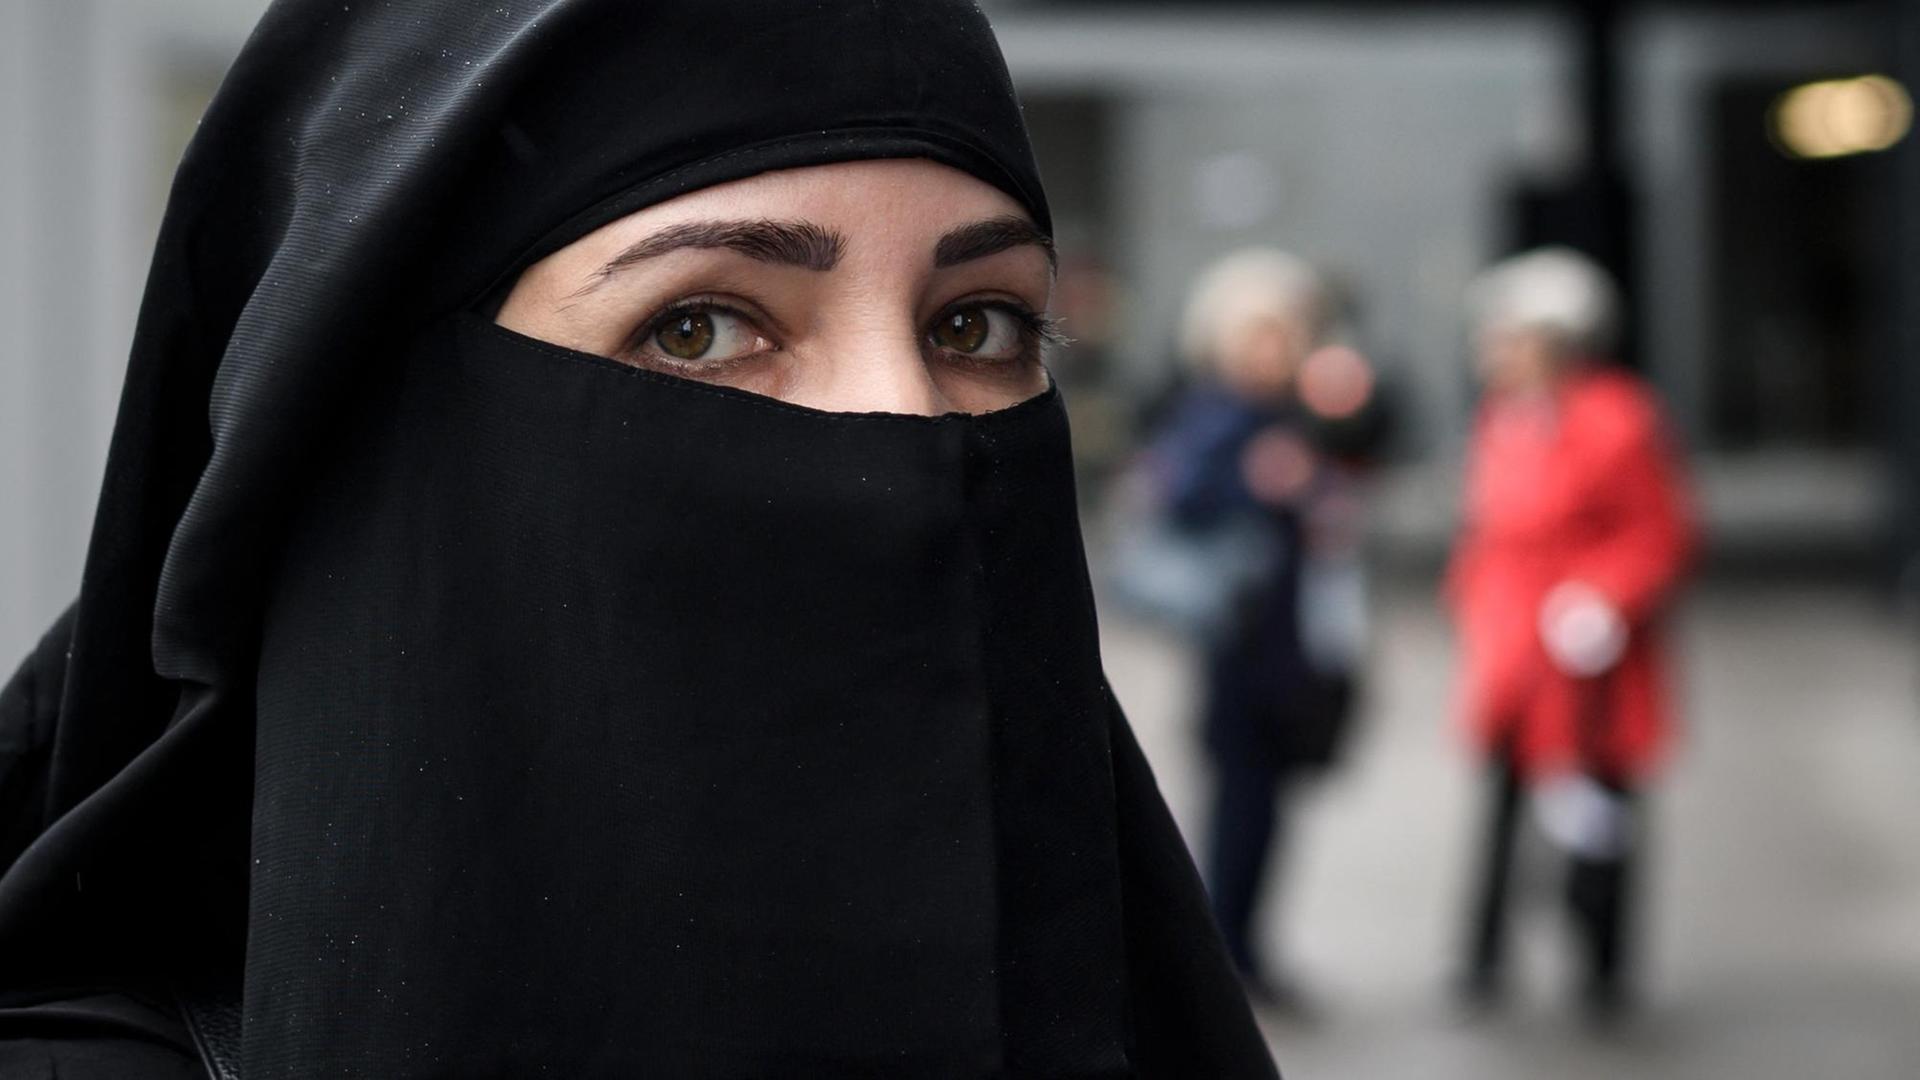 Gesetz verabschiedet - Schweiz verbietet Burkas und andere Vollverschleierungen